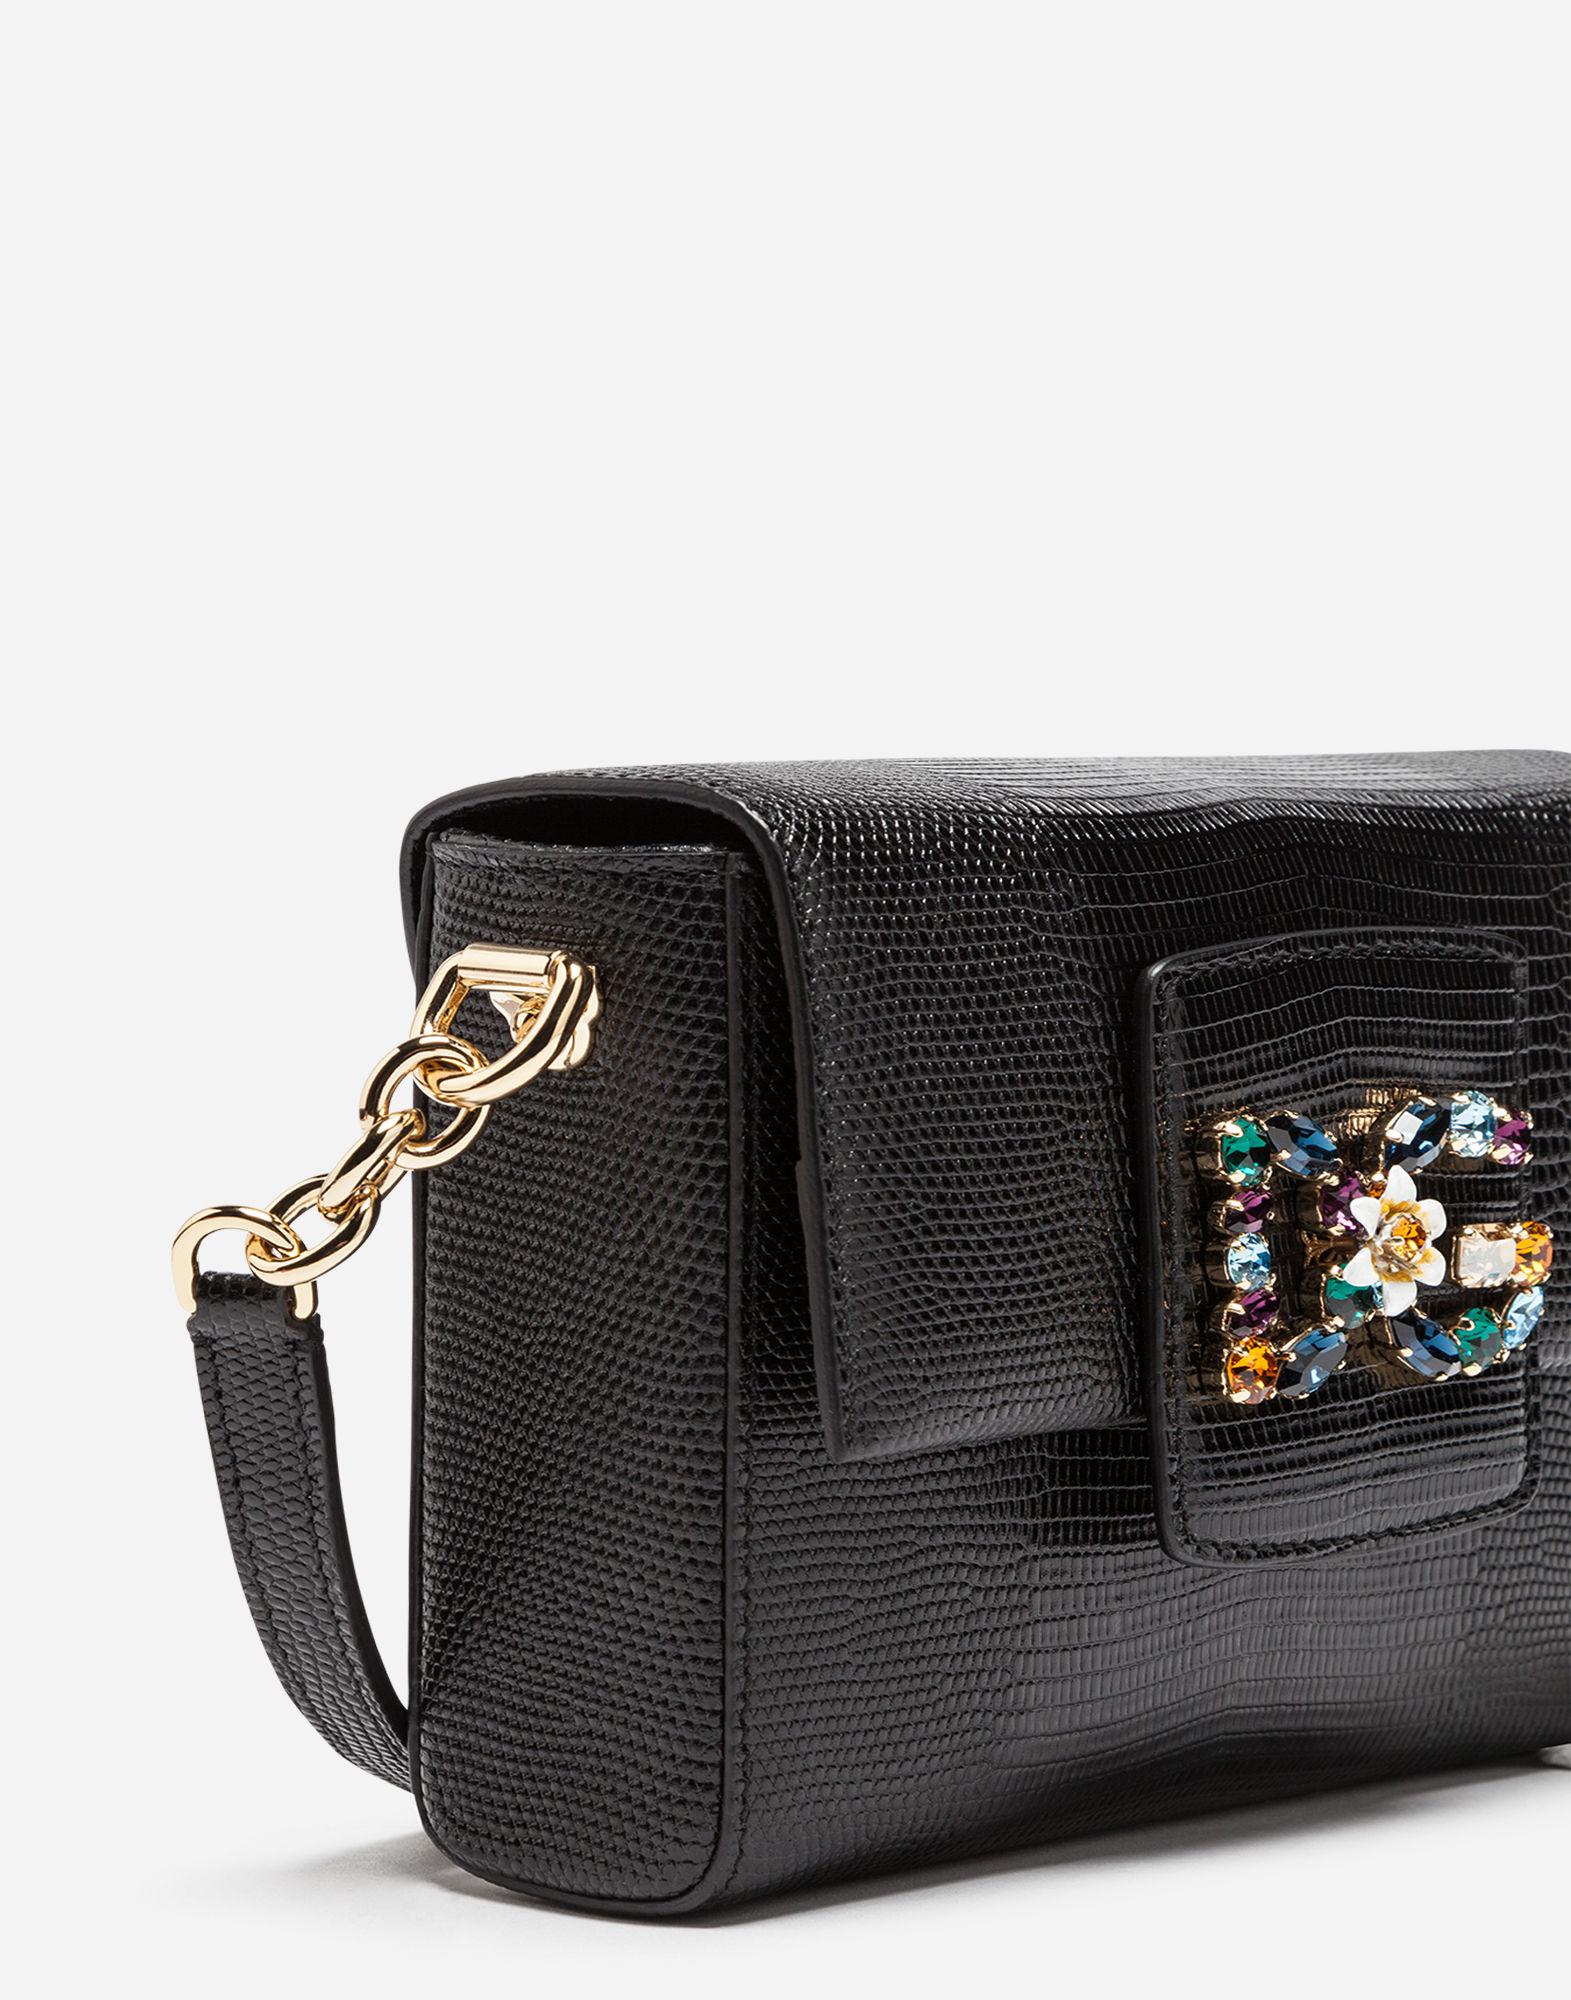 Dolce & Gabbana Dg Millennials Bag In Leather in Black | Lyst